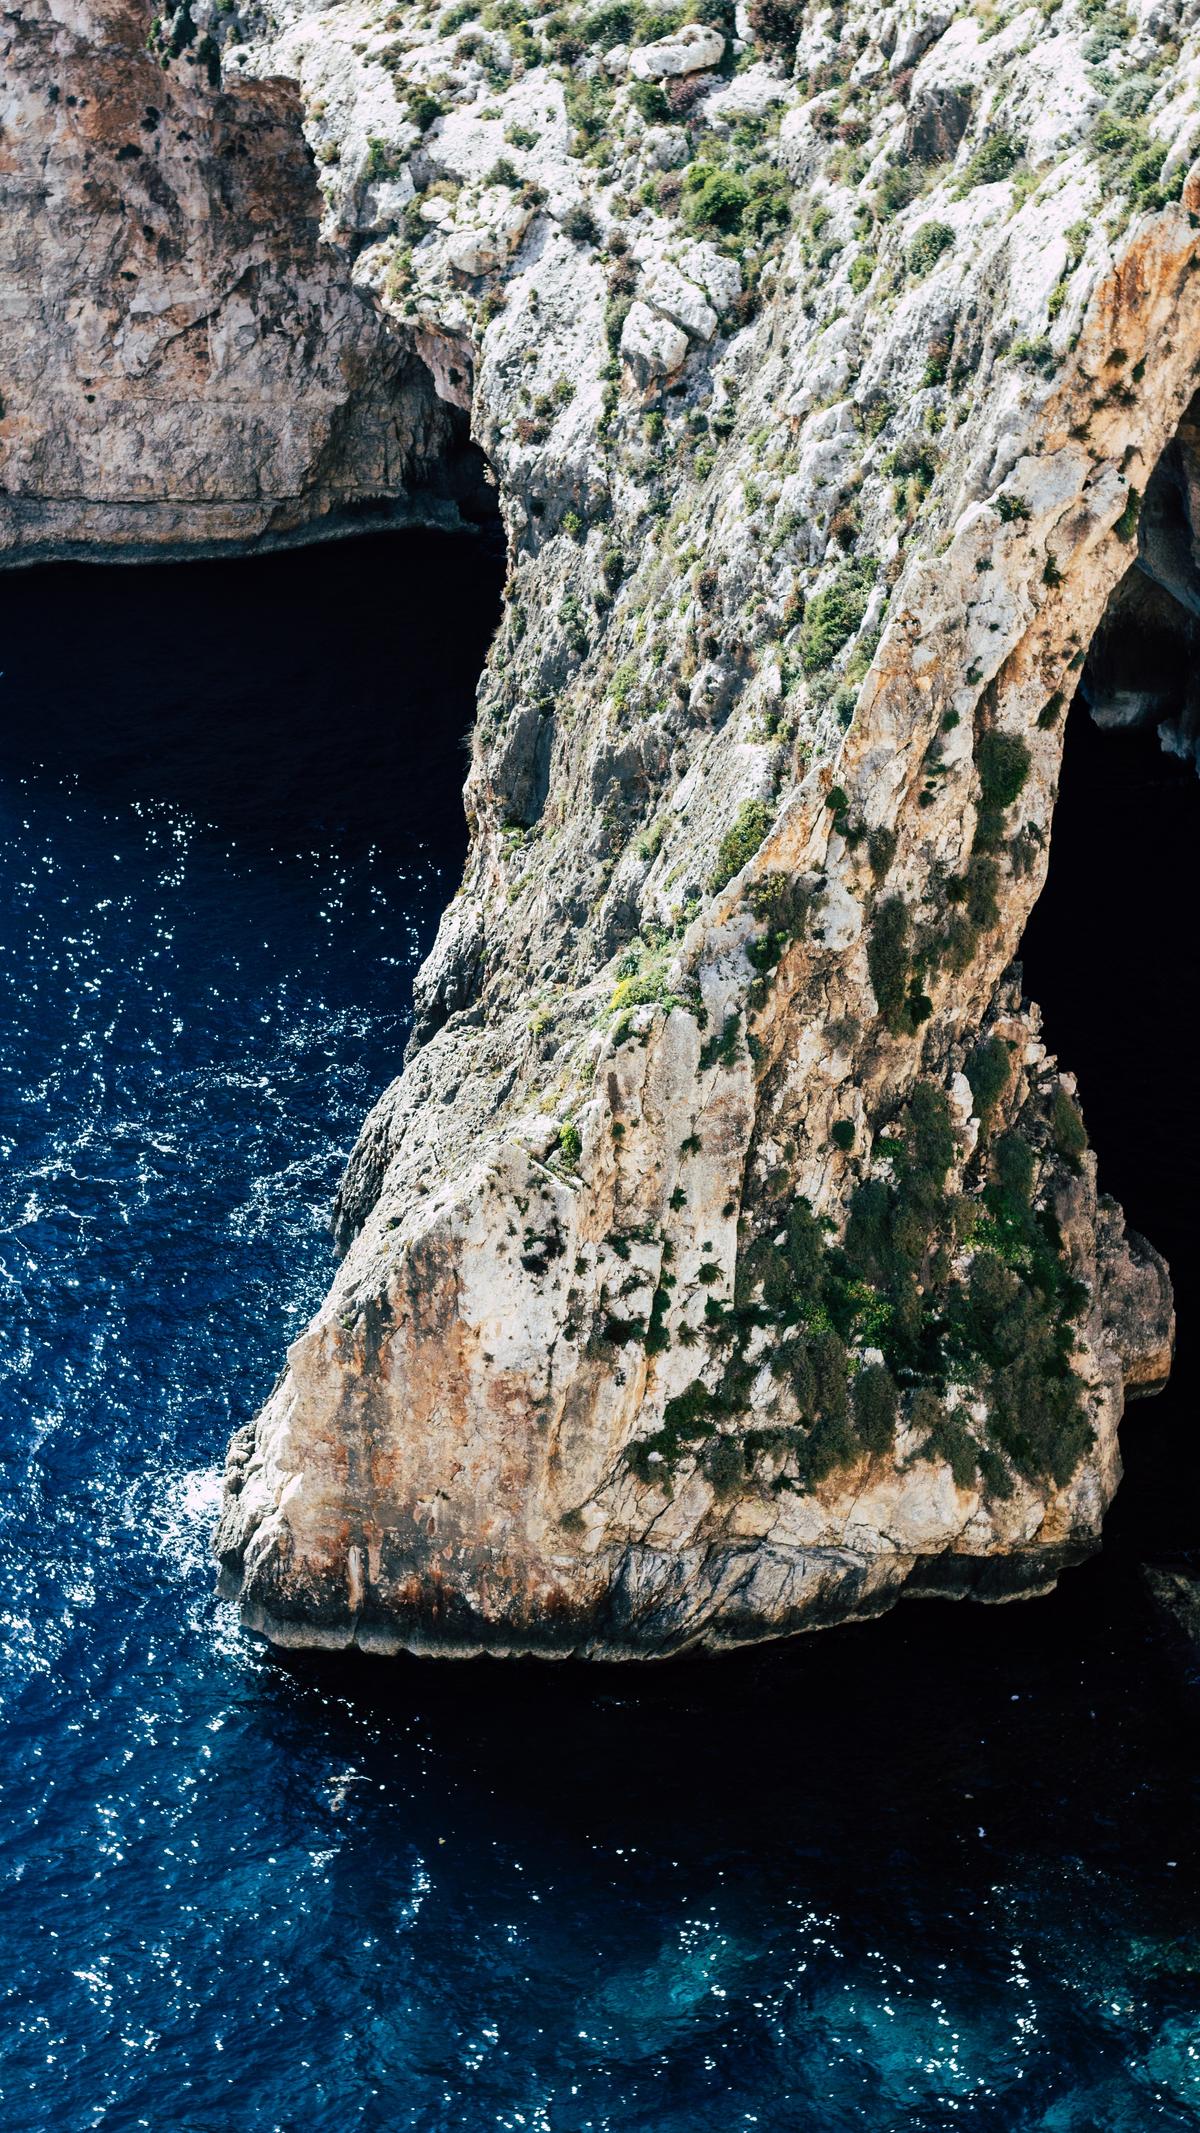 Devil's Grotto-Cayman Islands photo by Ilya Schulte